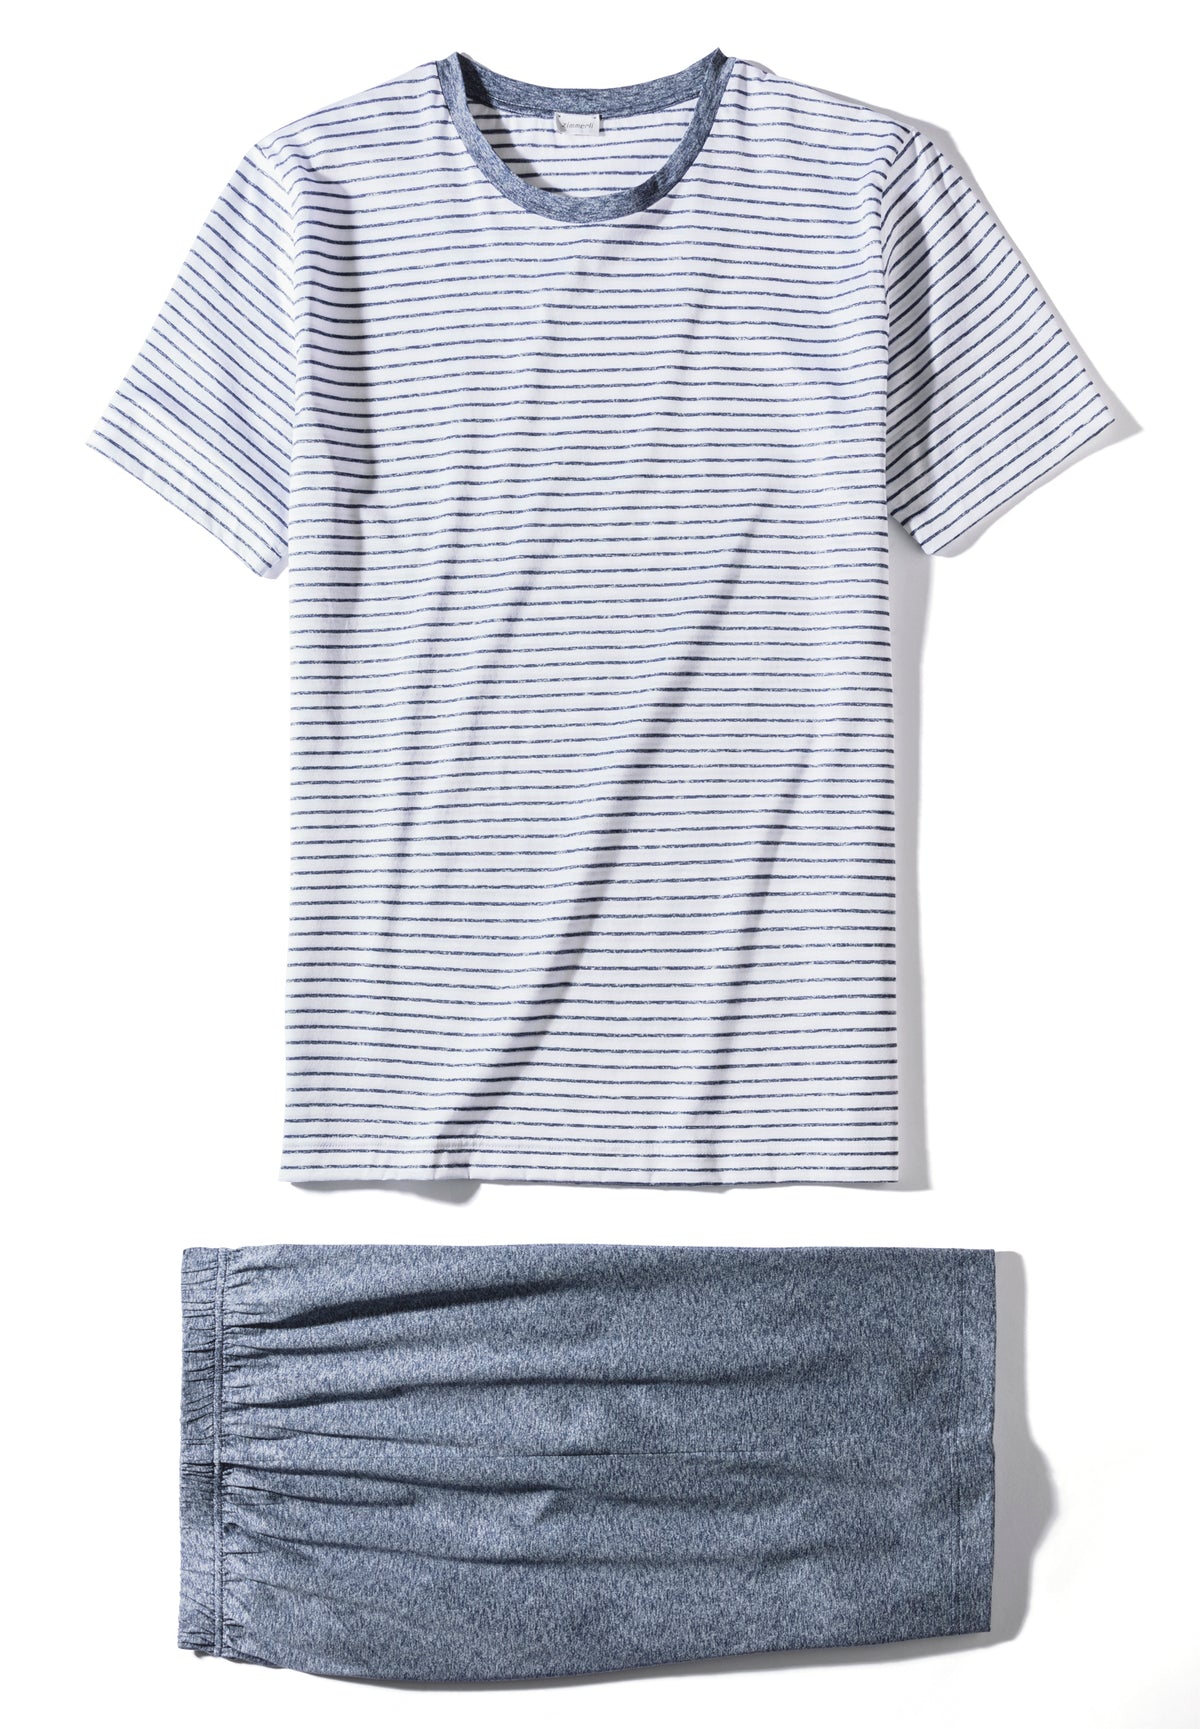 Filodiscozia Stripes | Pyjama kurz - white stripes